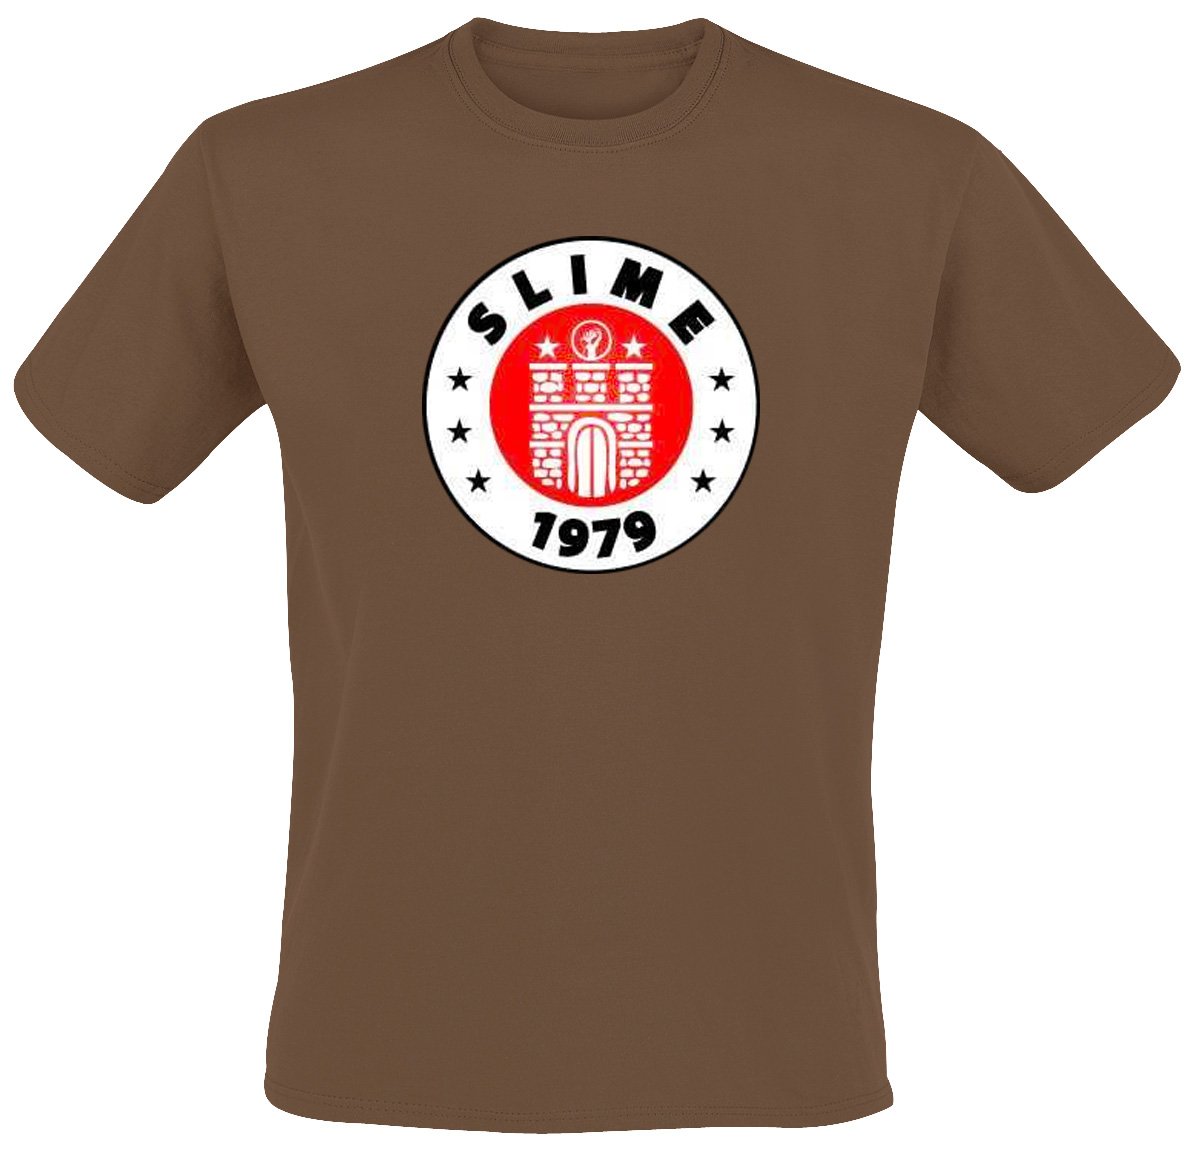 Slime - St. Pauli T-Shirt, braun, Grösse XXL